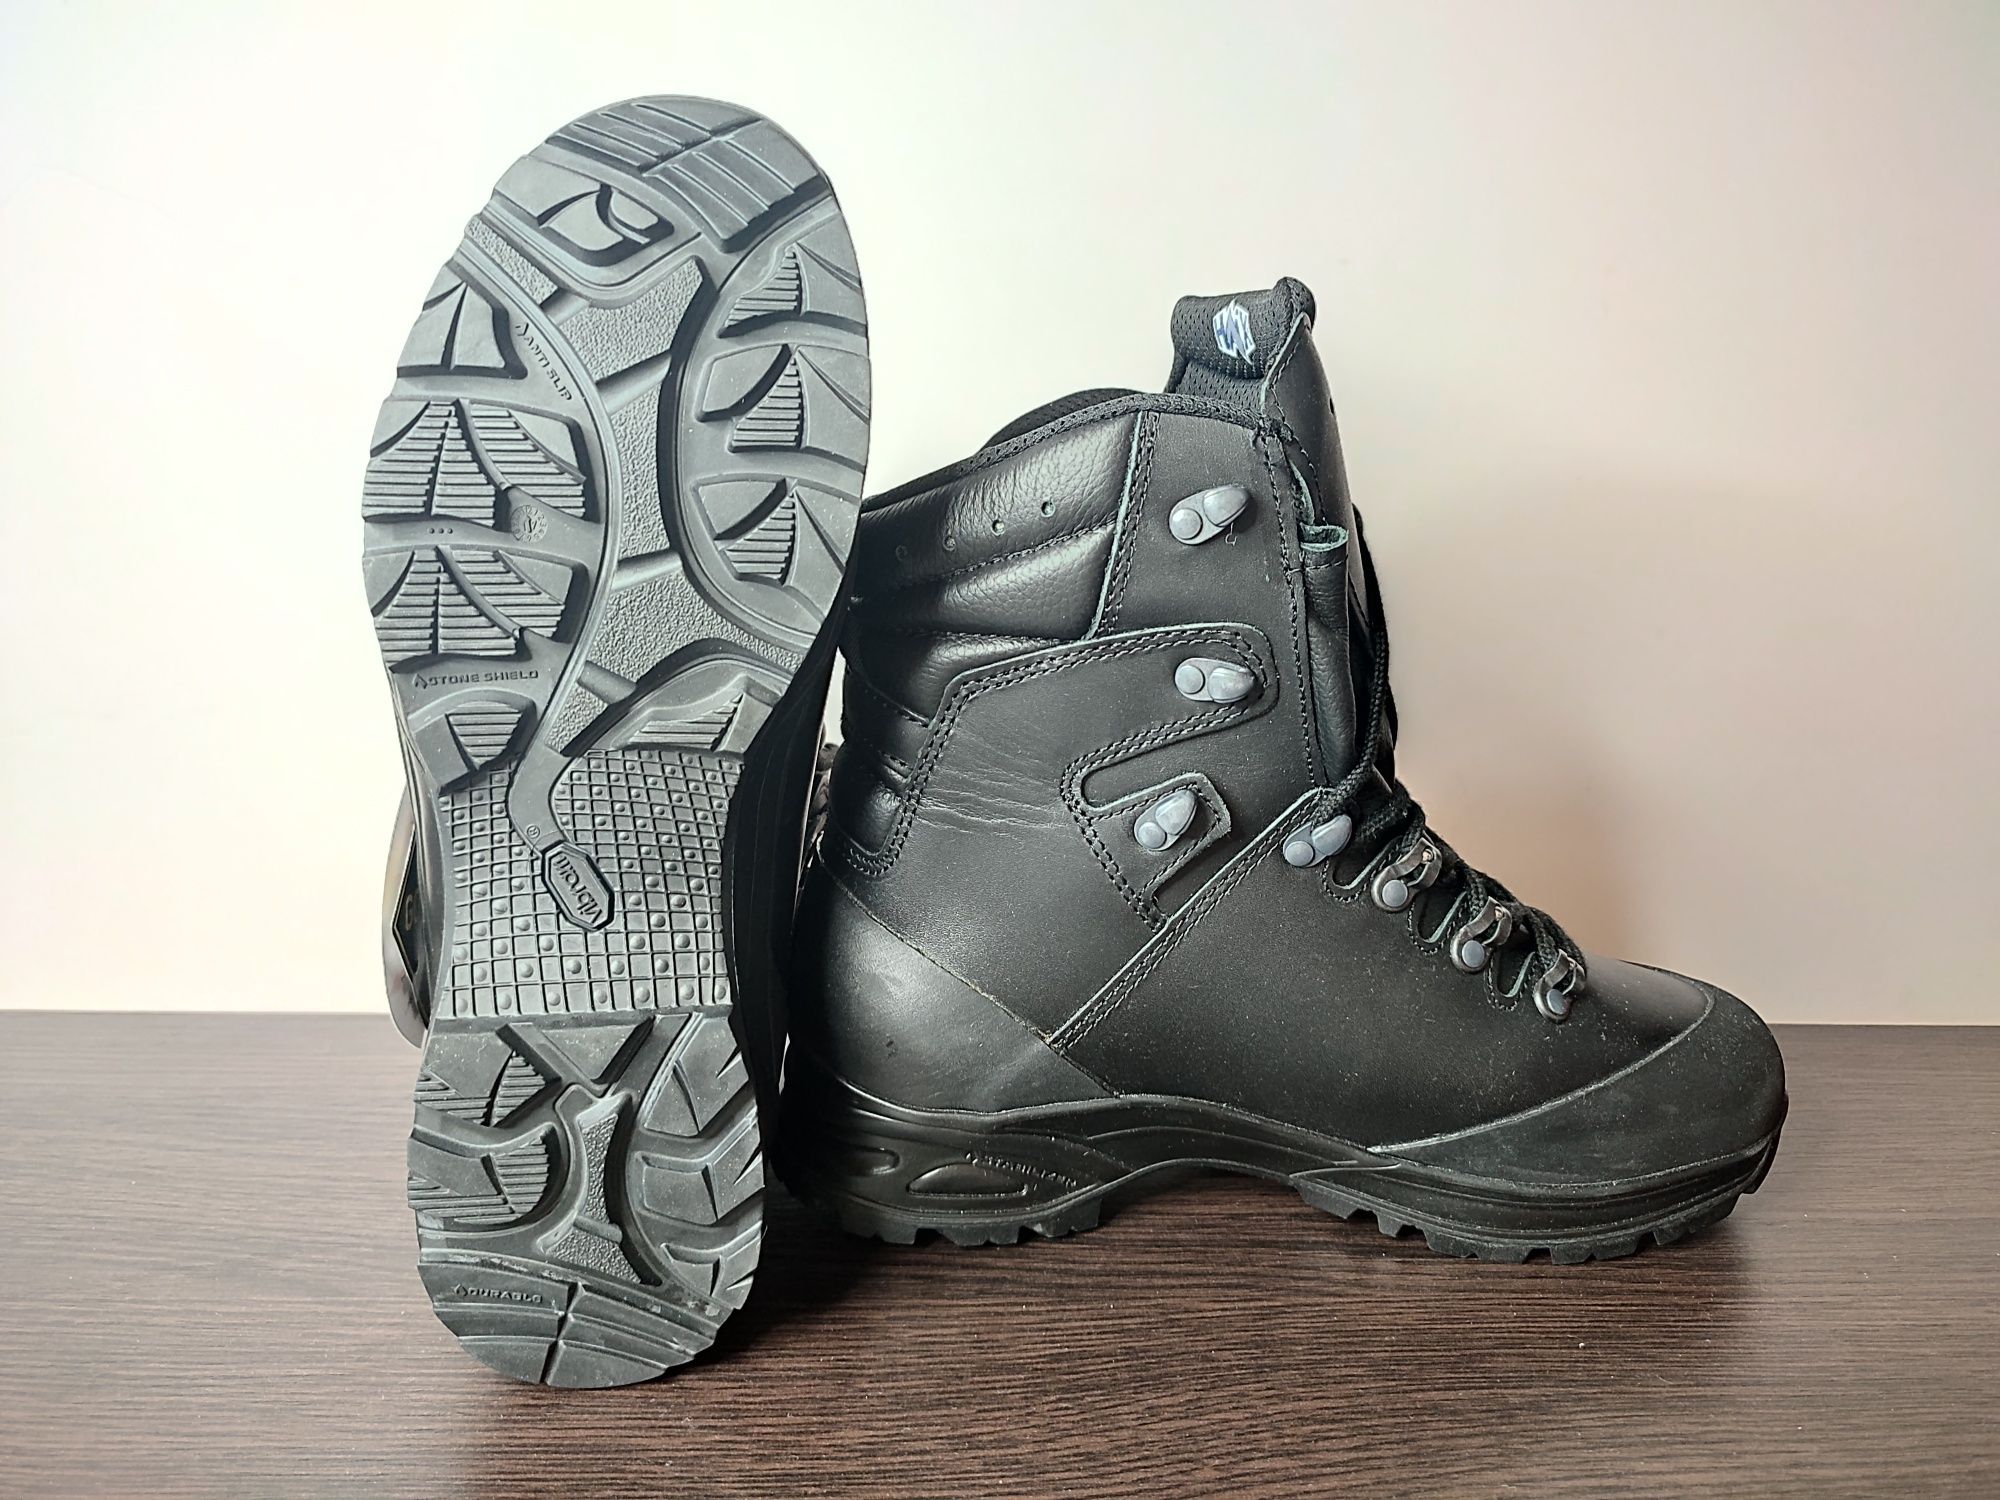 Оригинал новые кожаные ботинки Haix Commander GTX Goretex Vibram